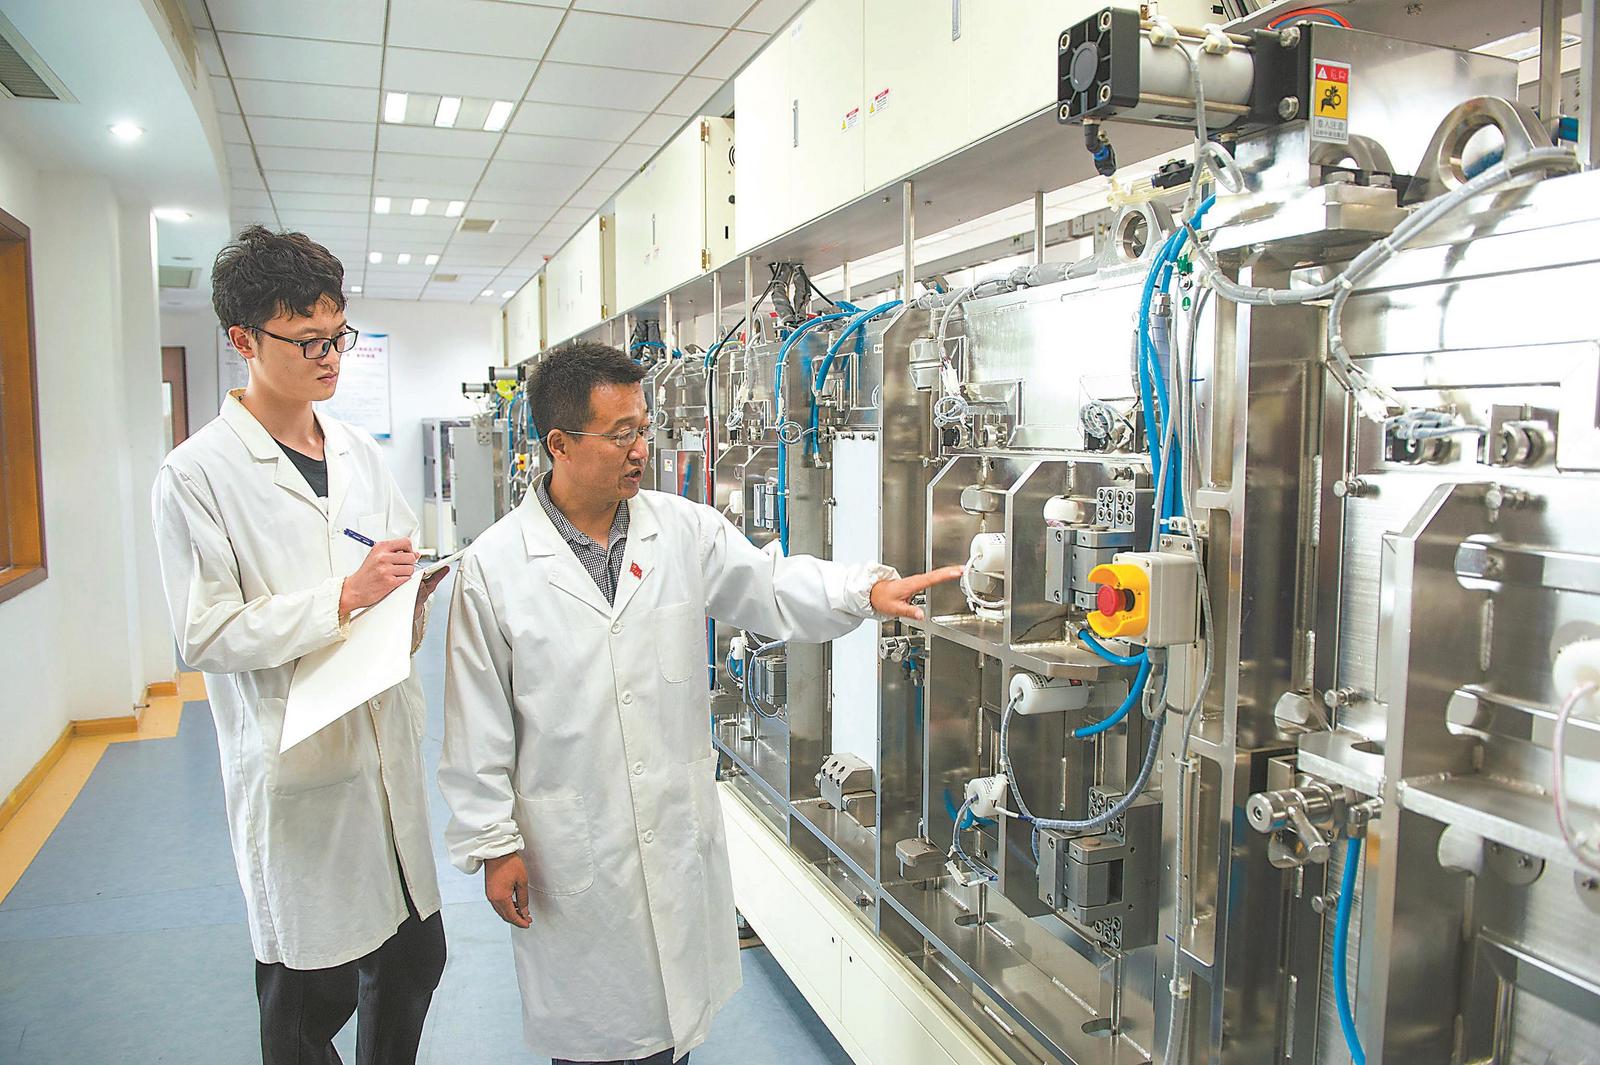 蚌埠浮法玻璃新技术国家重点实验室科研人员正在研发超薄玻璃新产品。记者 李 博 摄